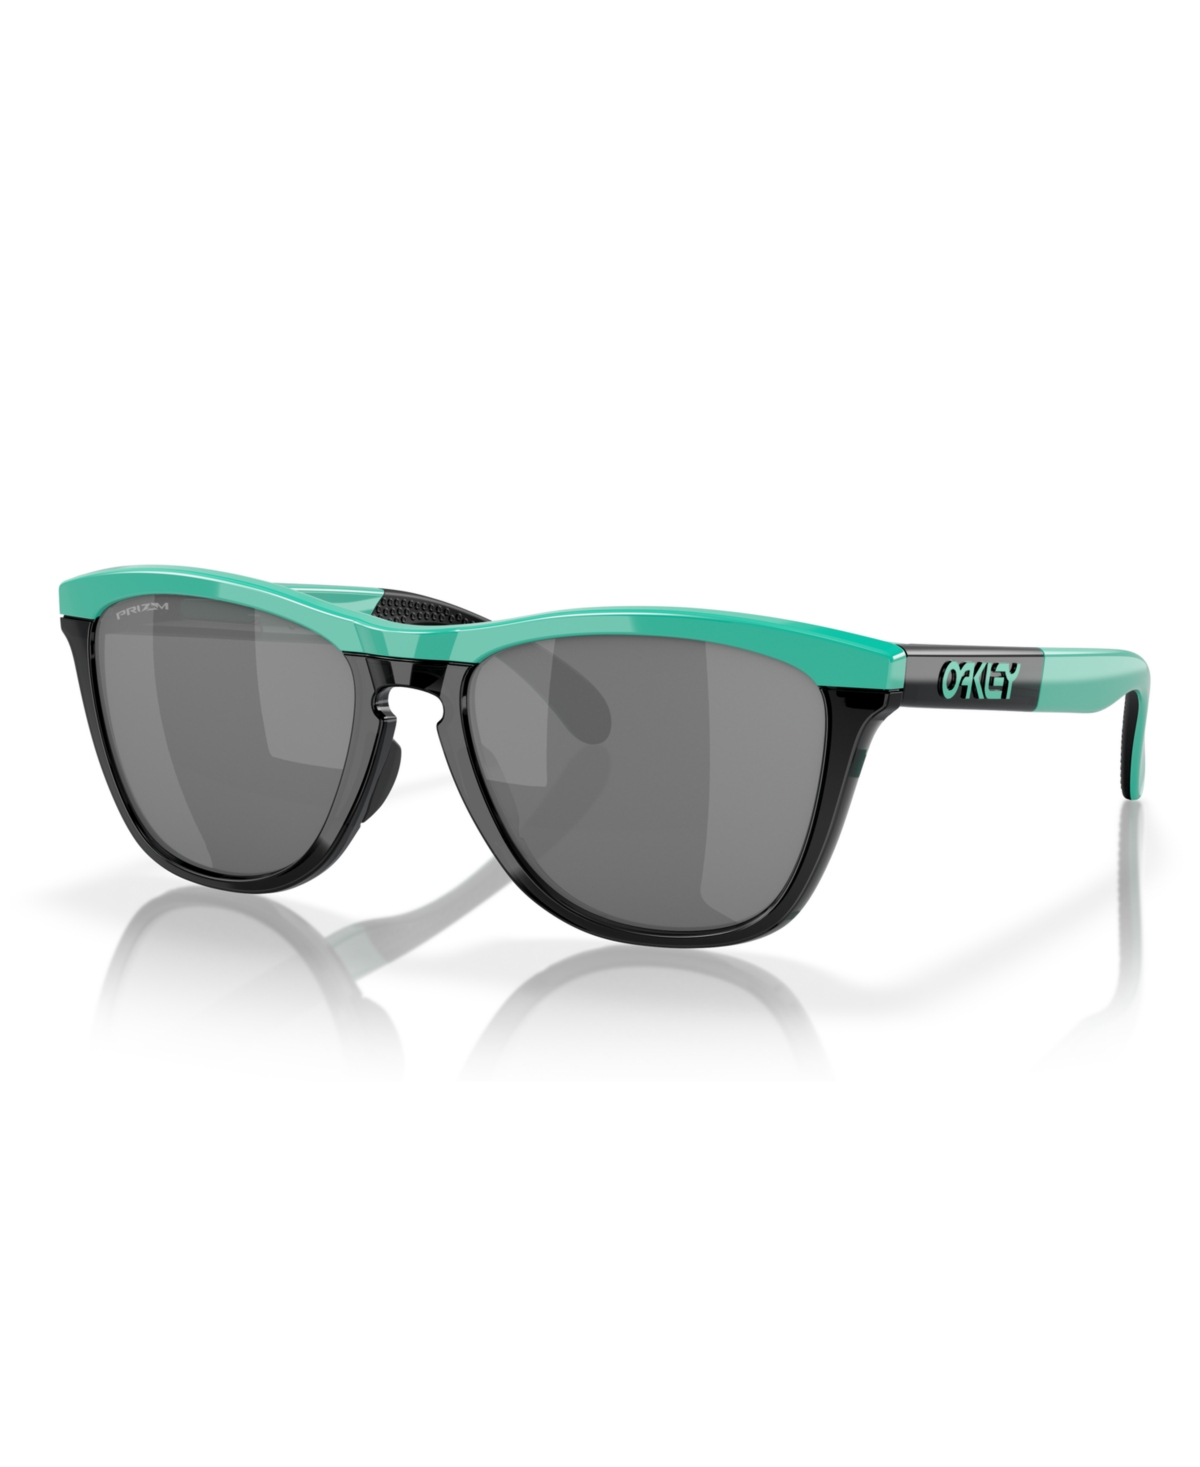 Oakley Men's Frogskins Range Sunglasses, Mirror Oo9284 In Celeste